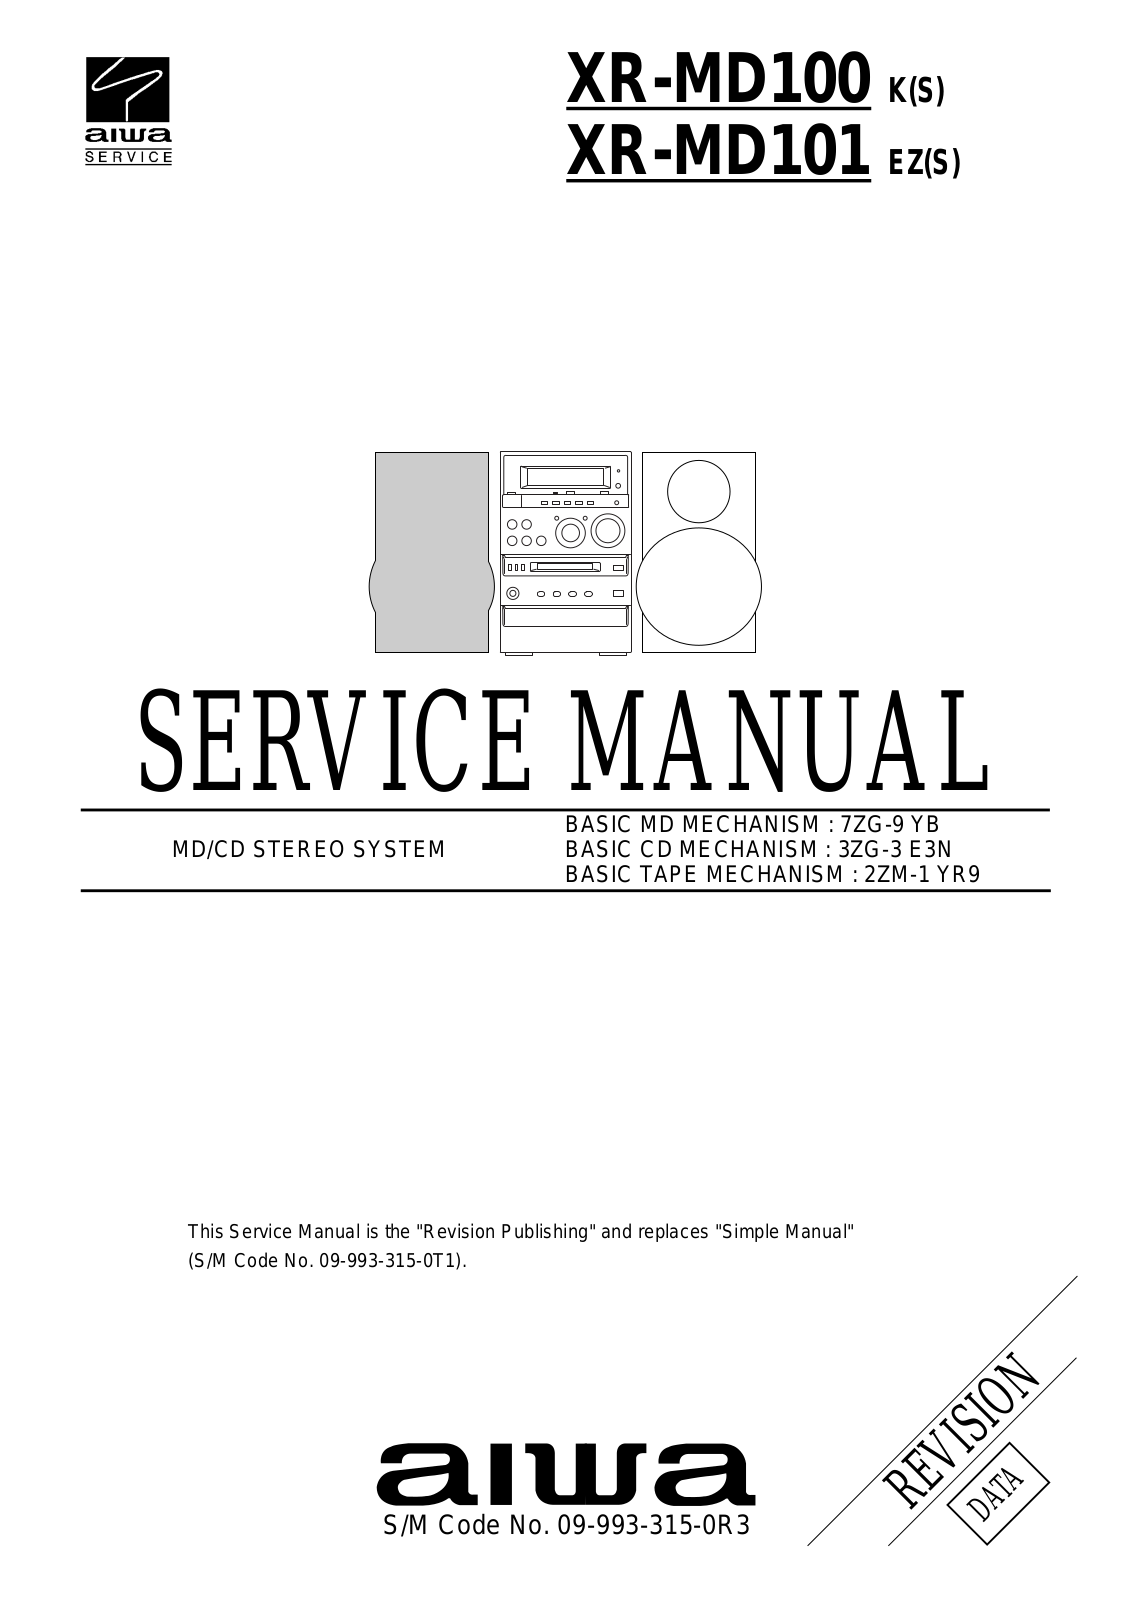 LG XR MD100, XR MD101 Service Manual